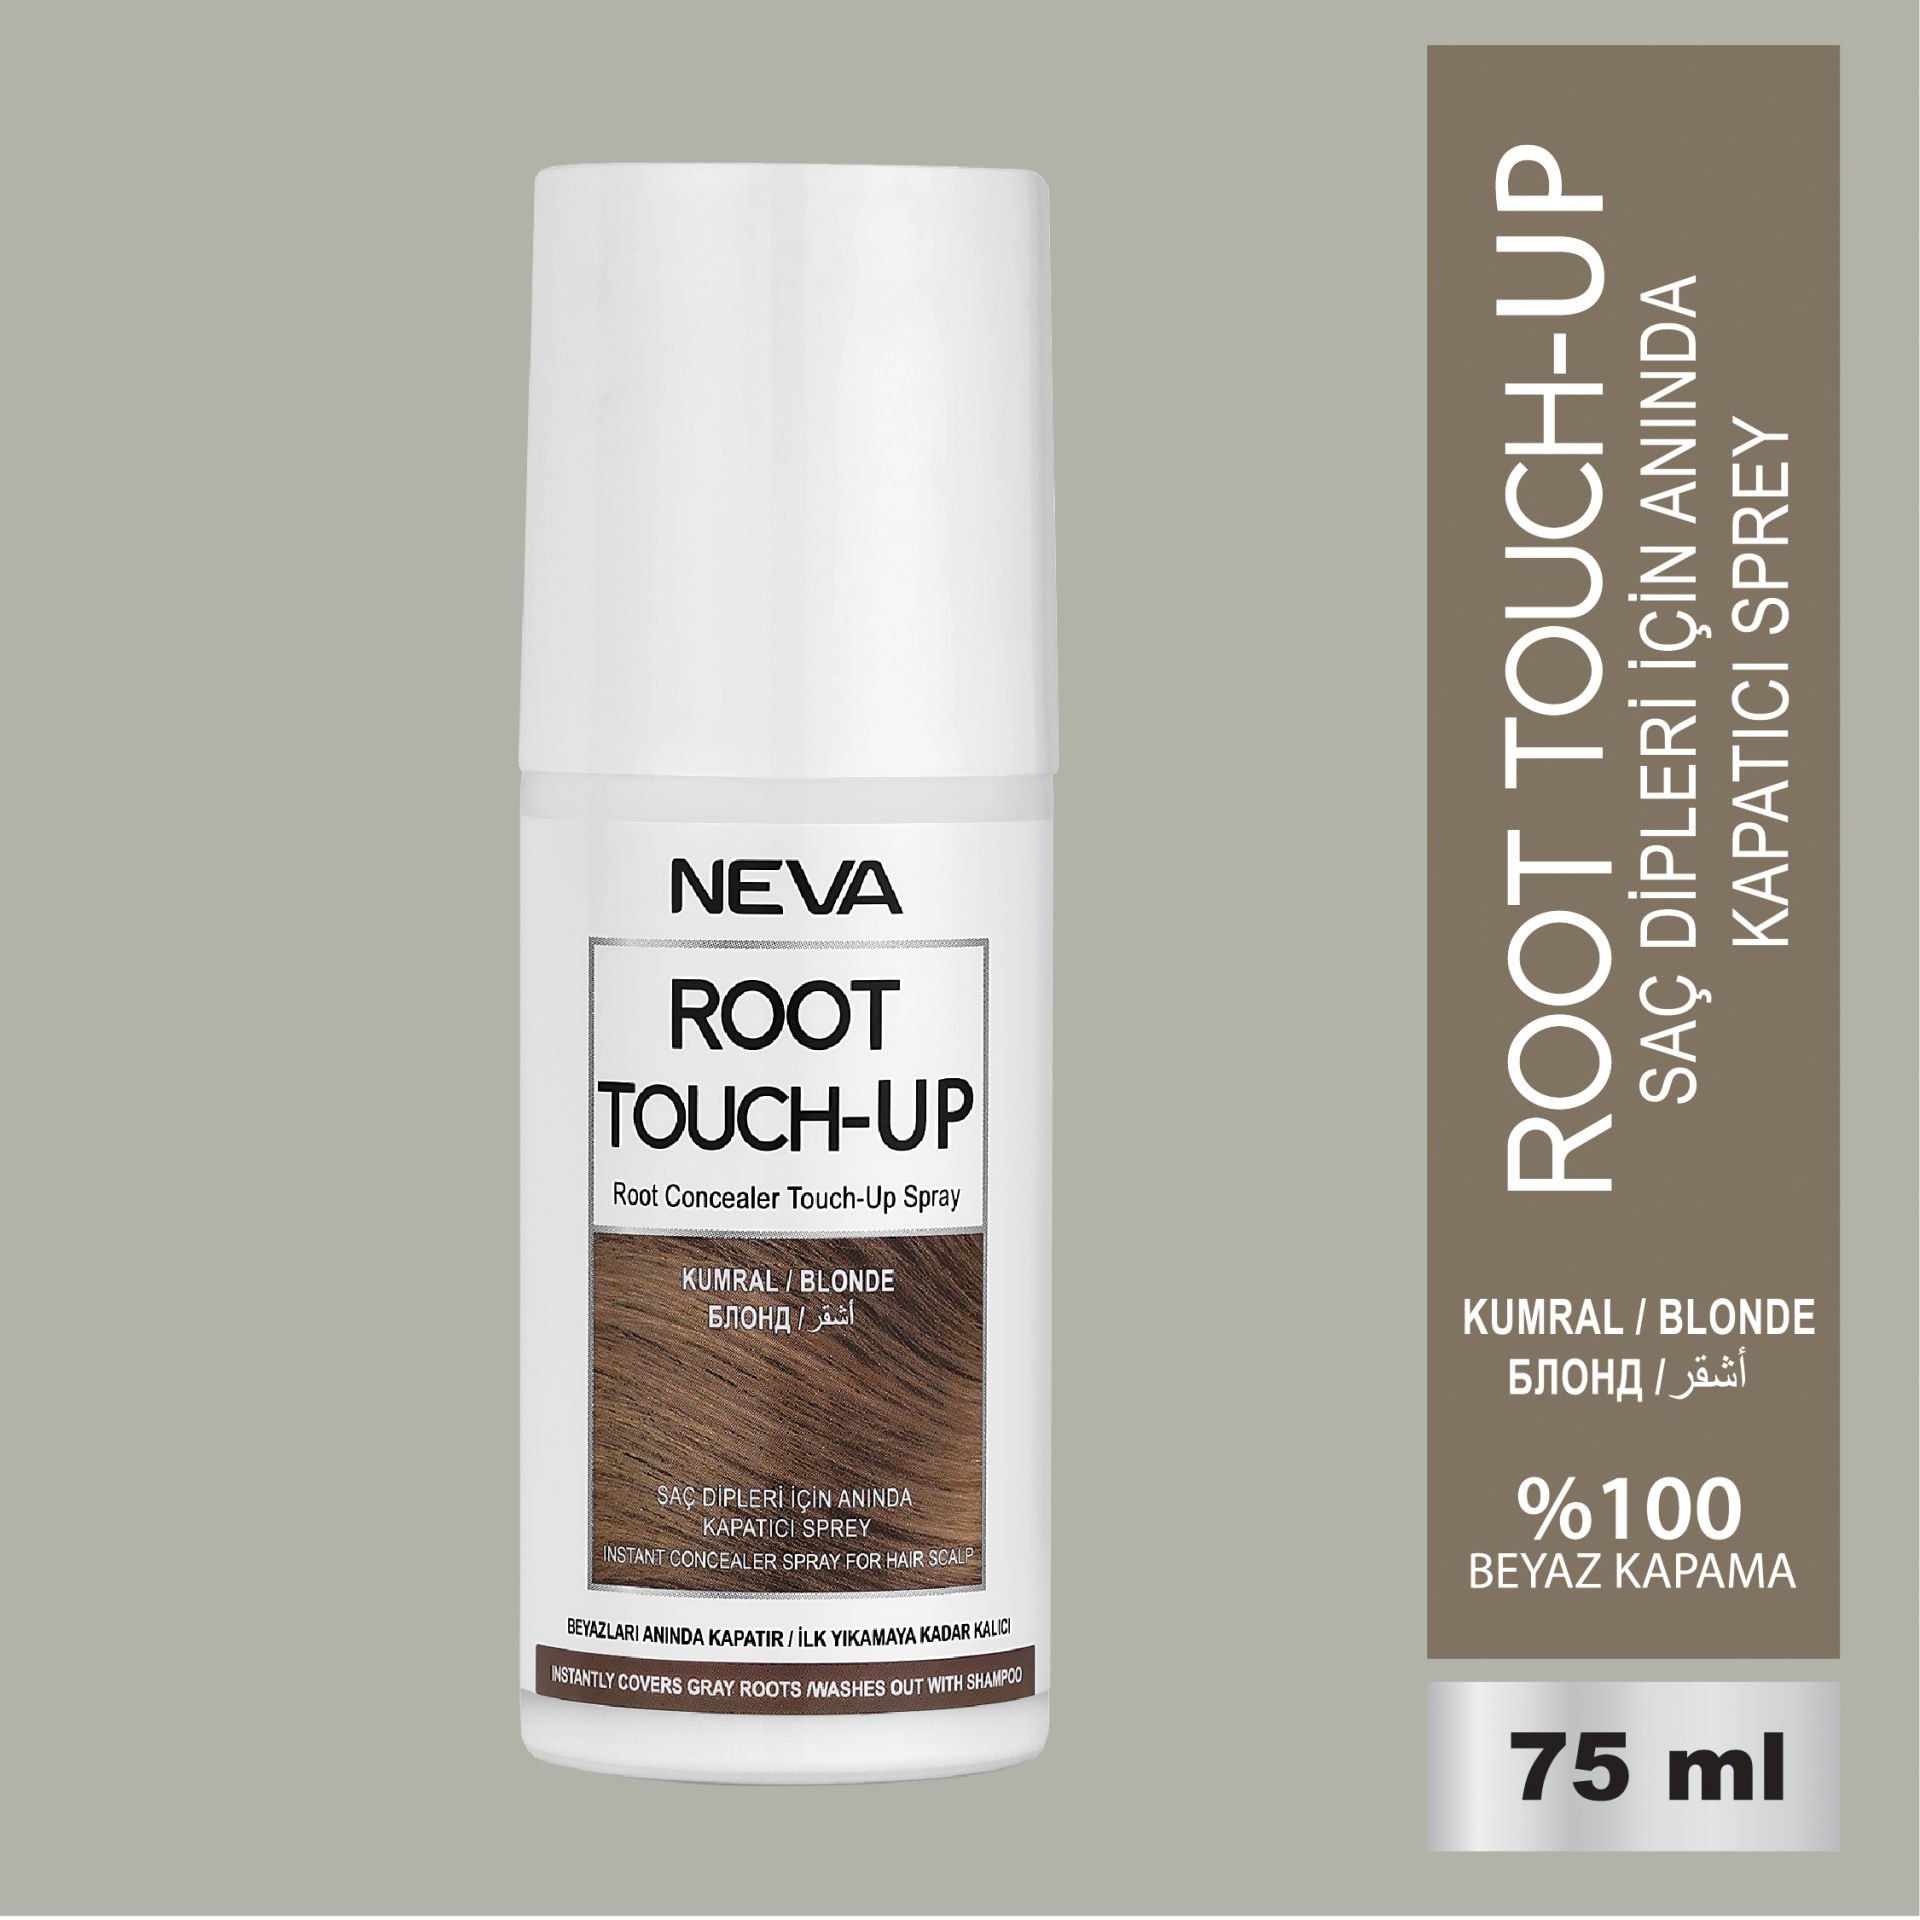 Root Touch Up Saç Dipleri İçin Anında Kapatıcı Sprey- Kumral 75ml